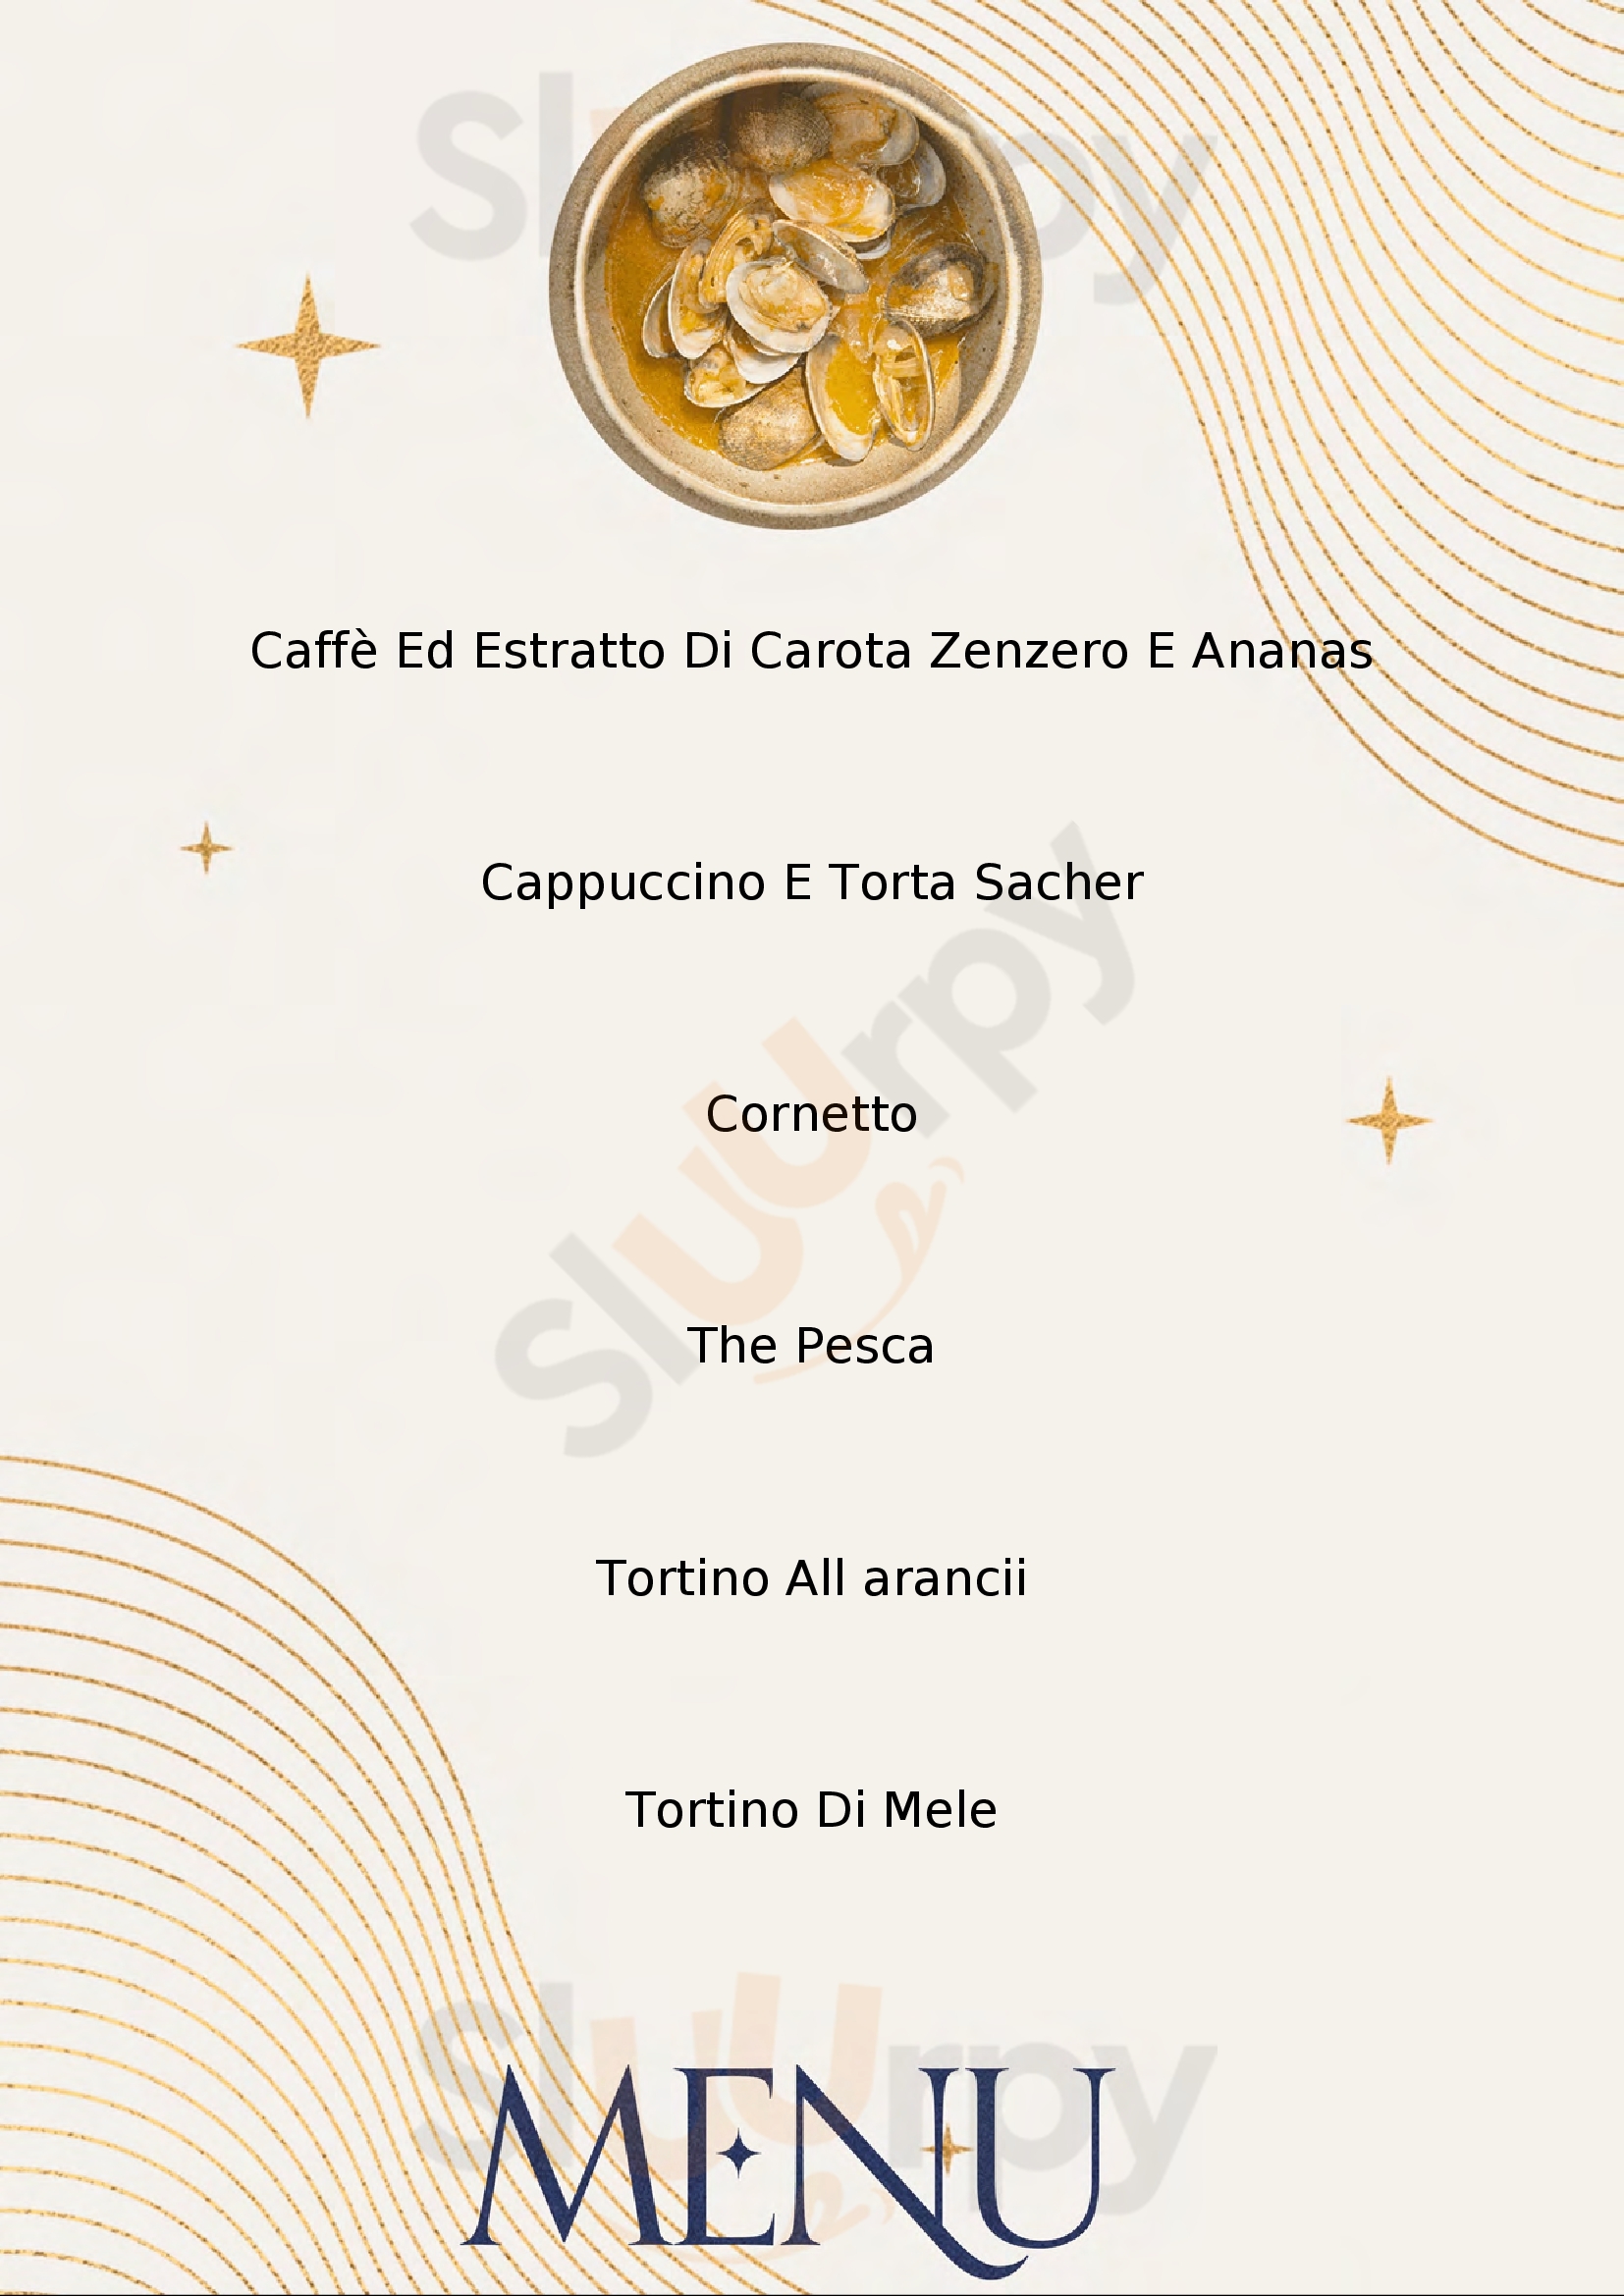 Armonia Caffe Torino menù 1 pagina